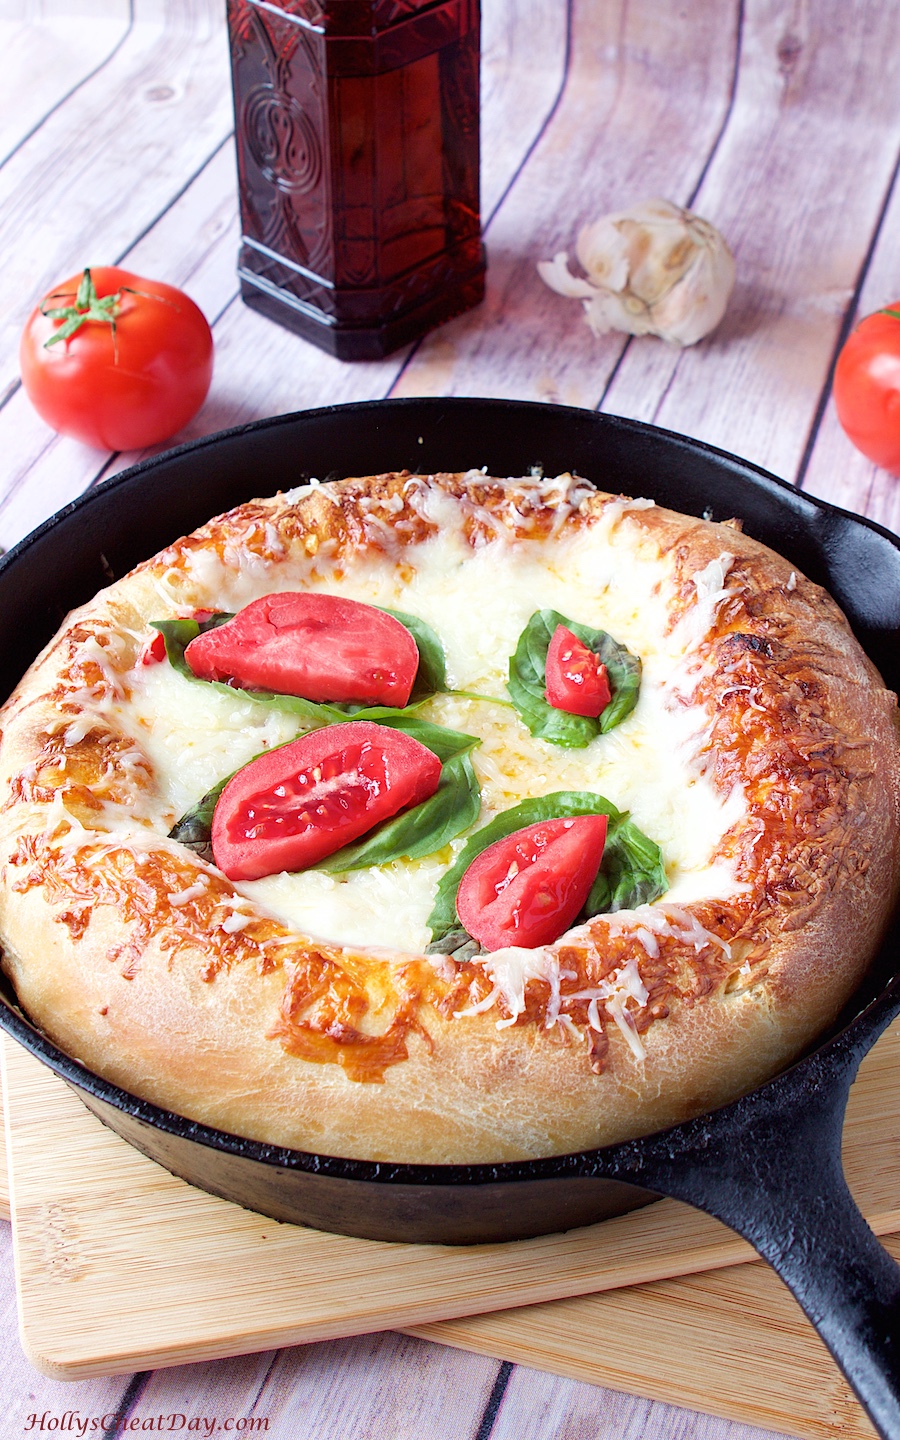 http://www.hollyscheatday.com/wp-content/uploads/2015/03/deep-dish-skillet-pizza-ovhsd-HollysCheatDay.com_.jpg